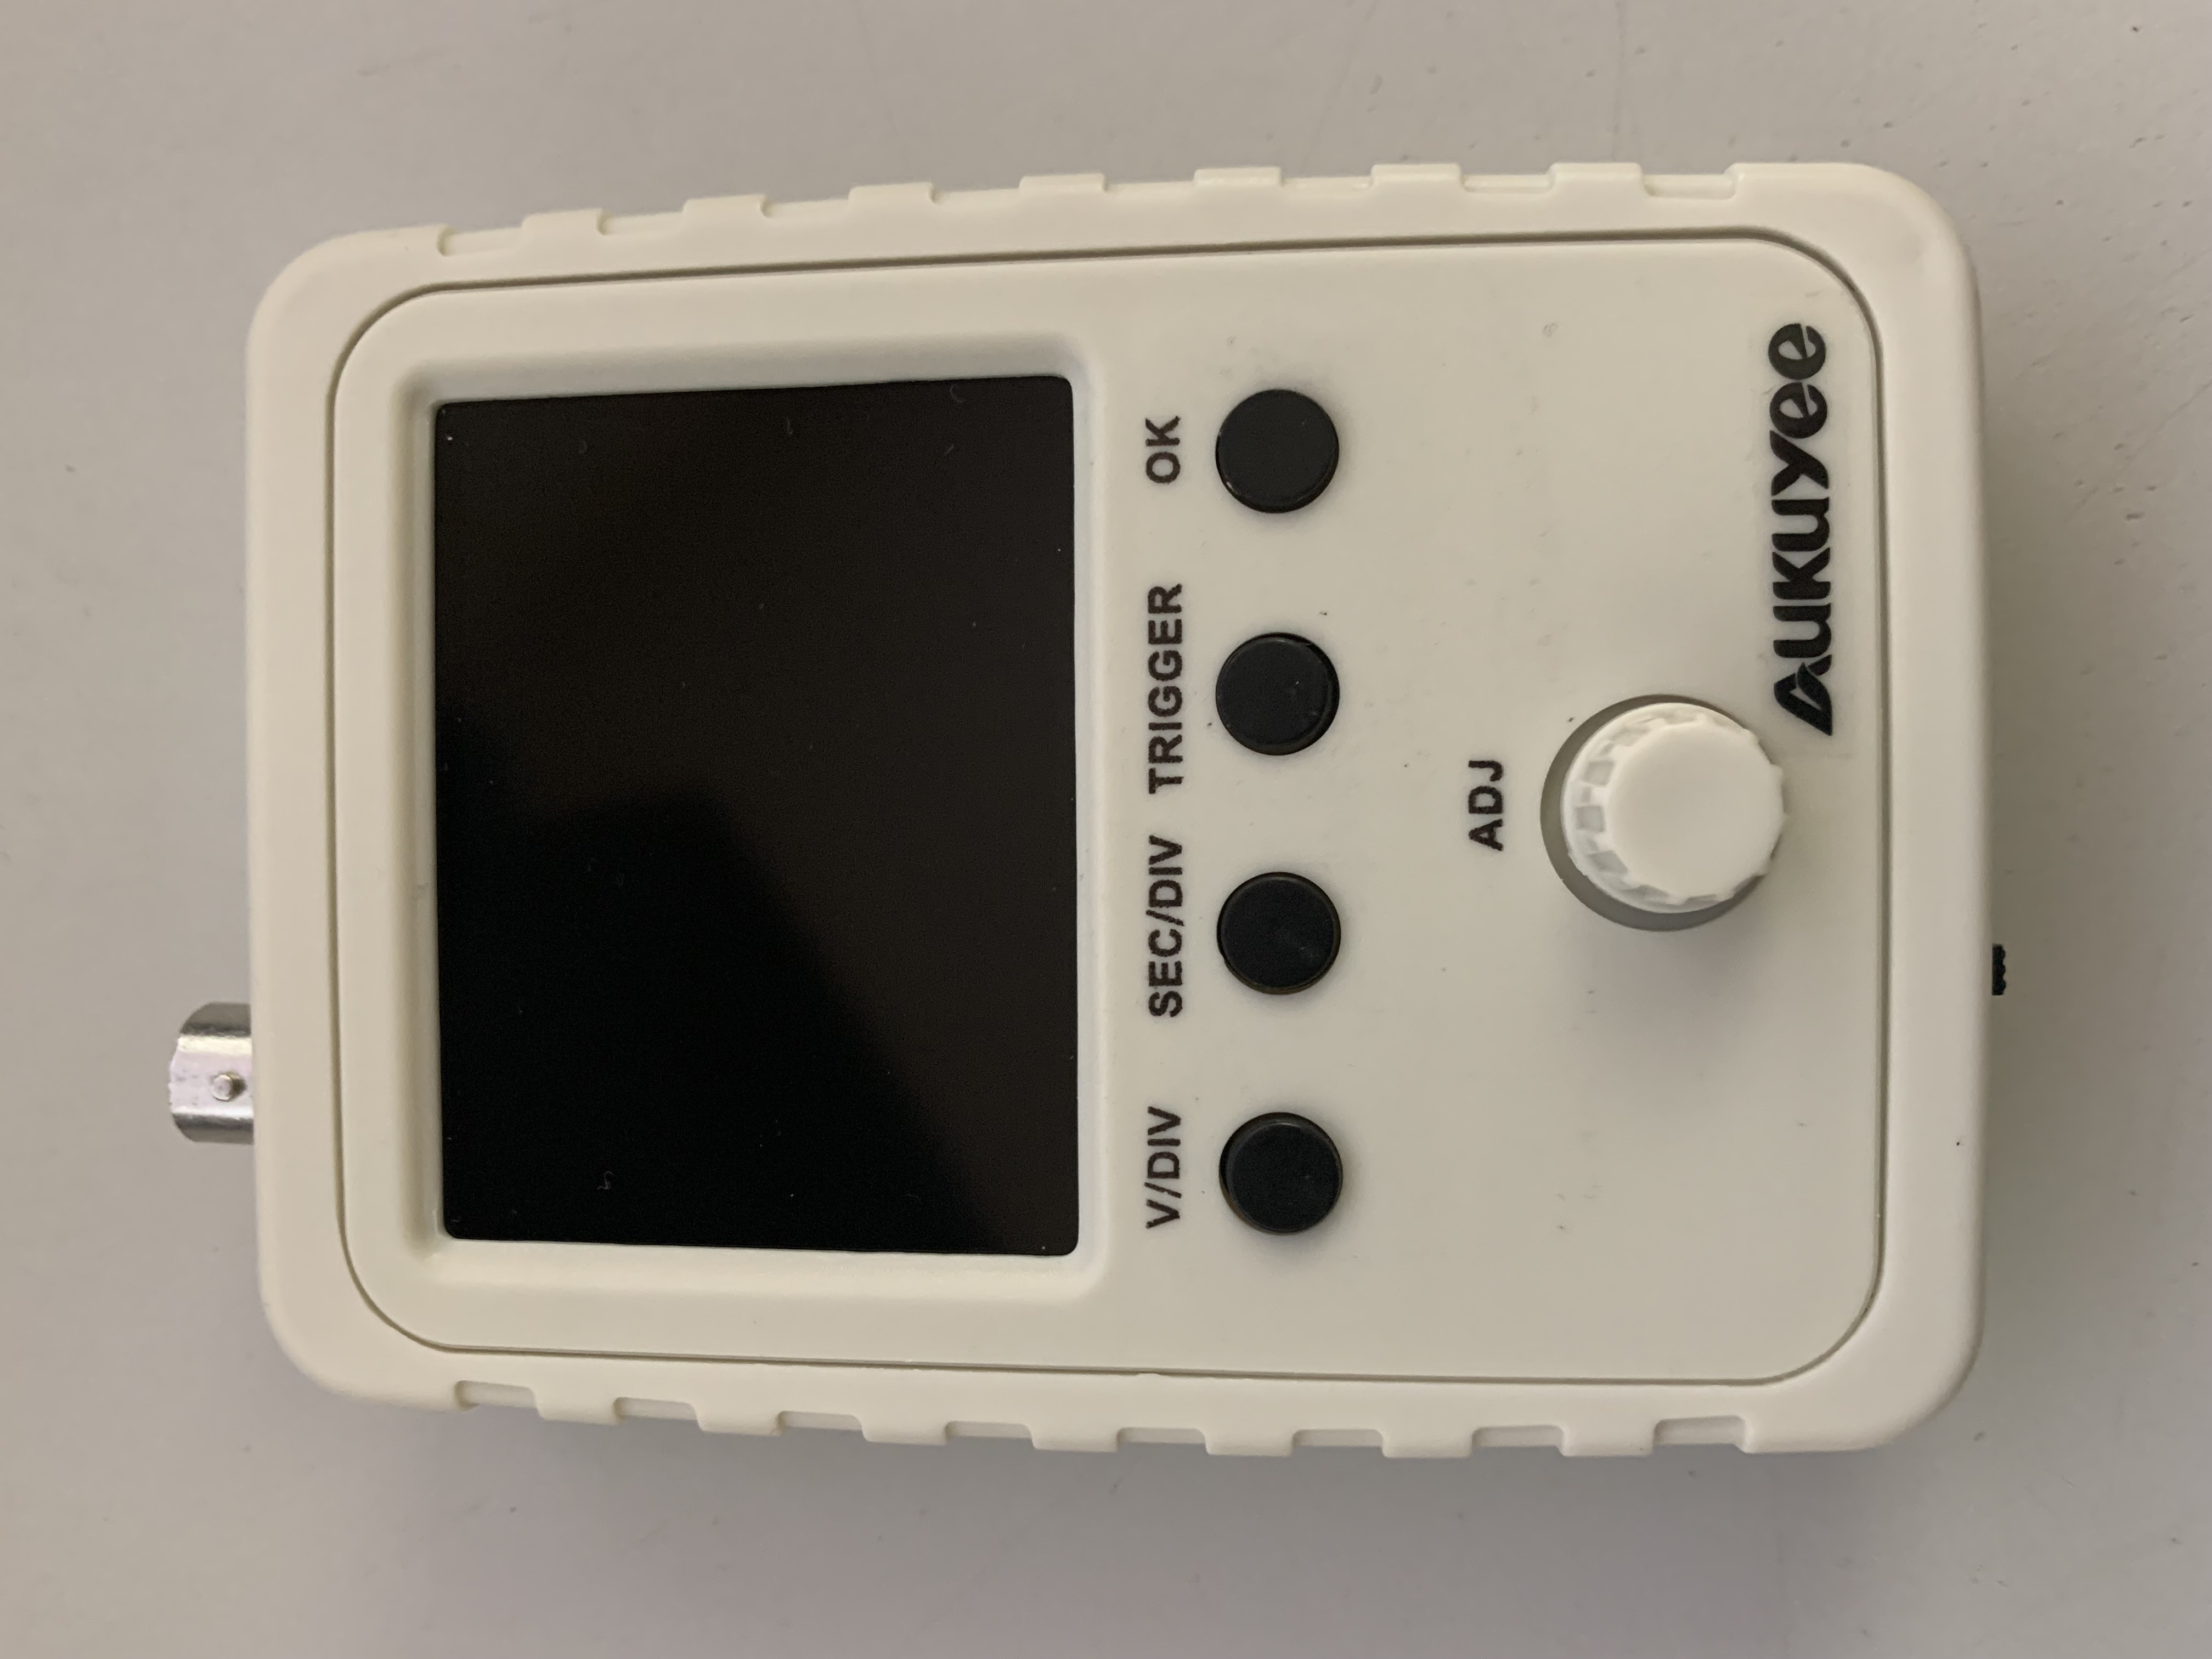 An AUKUYEE Q15001 handheld oscilloscope